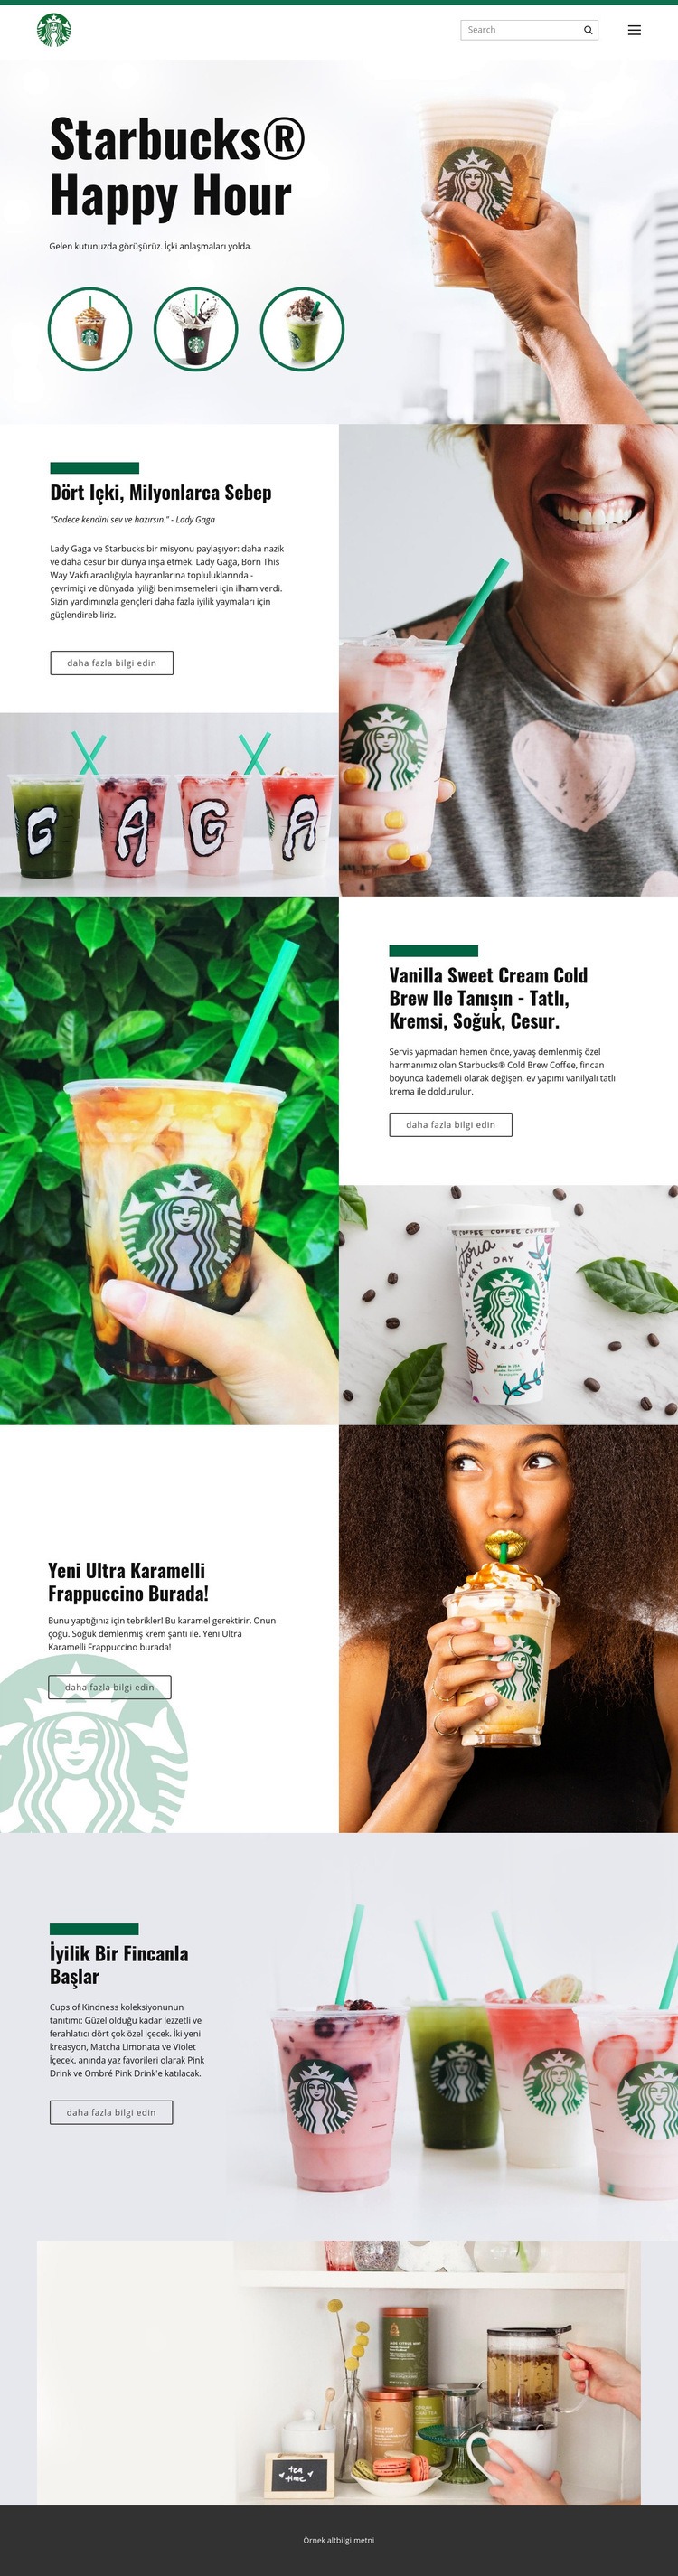 Starbucks kahve Web Sitesi Mockup'ı